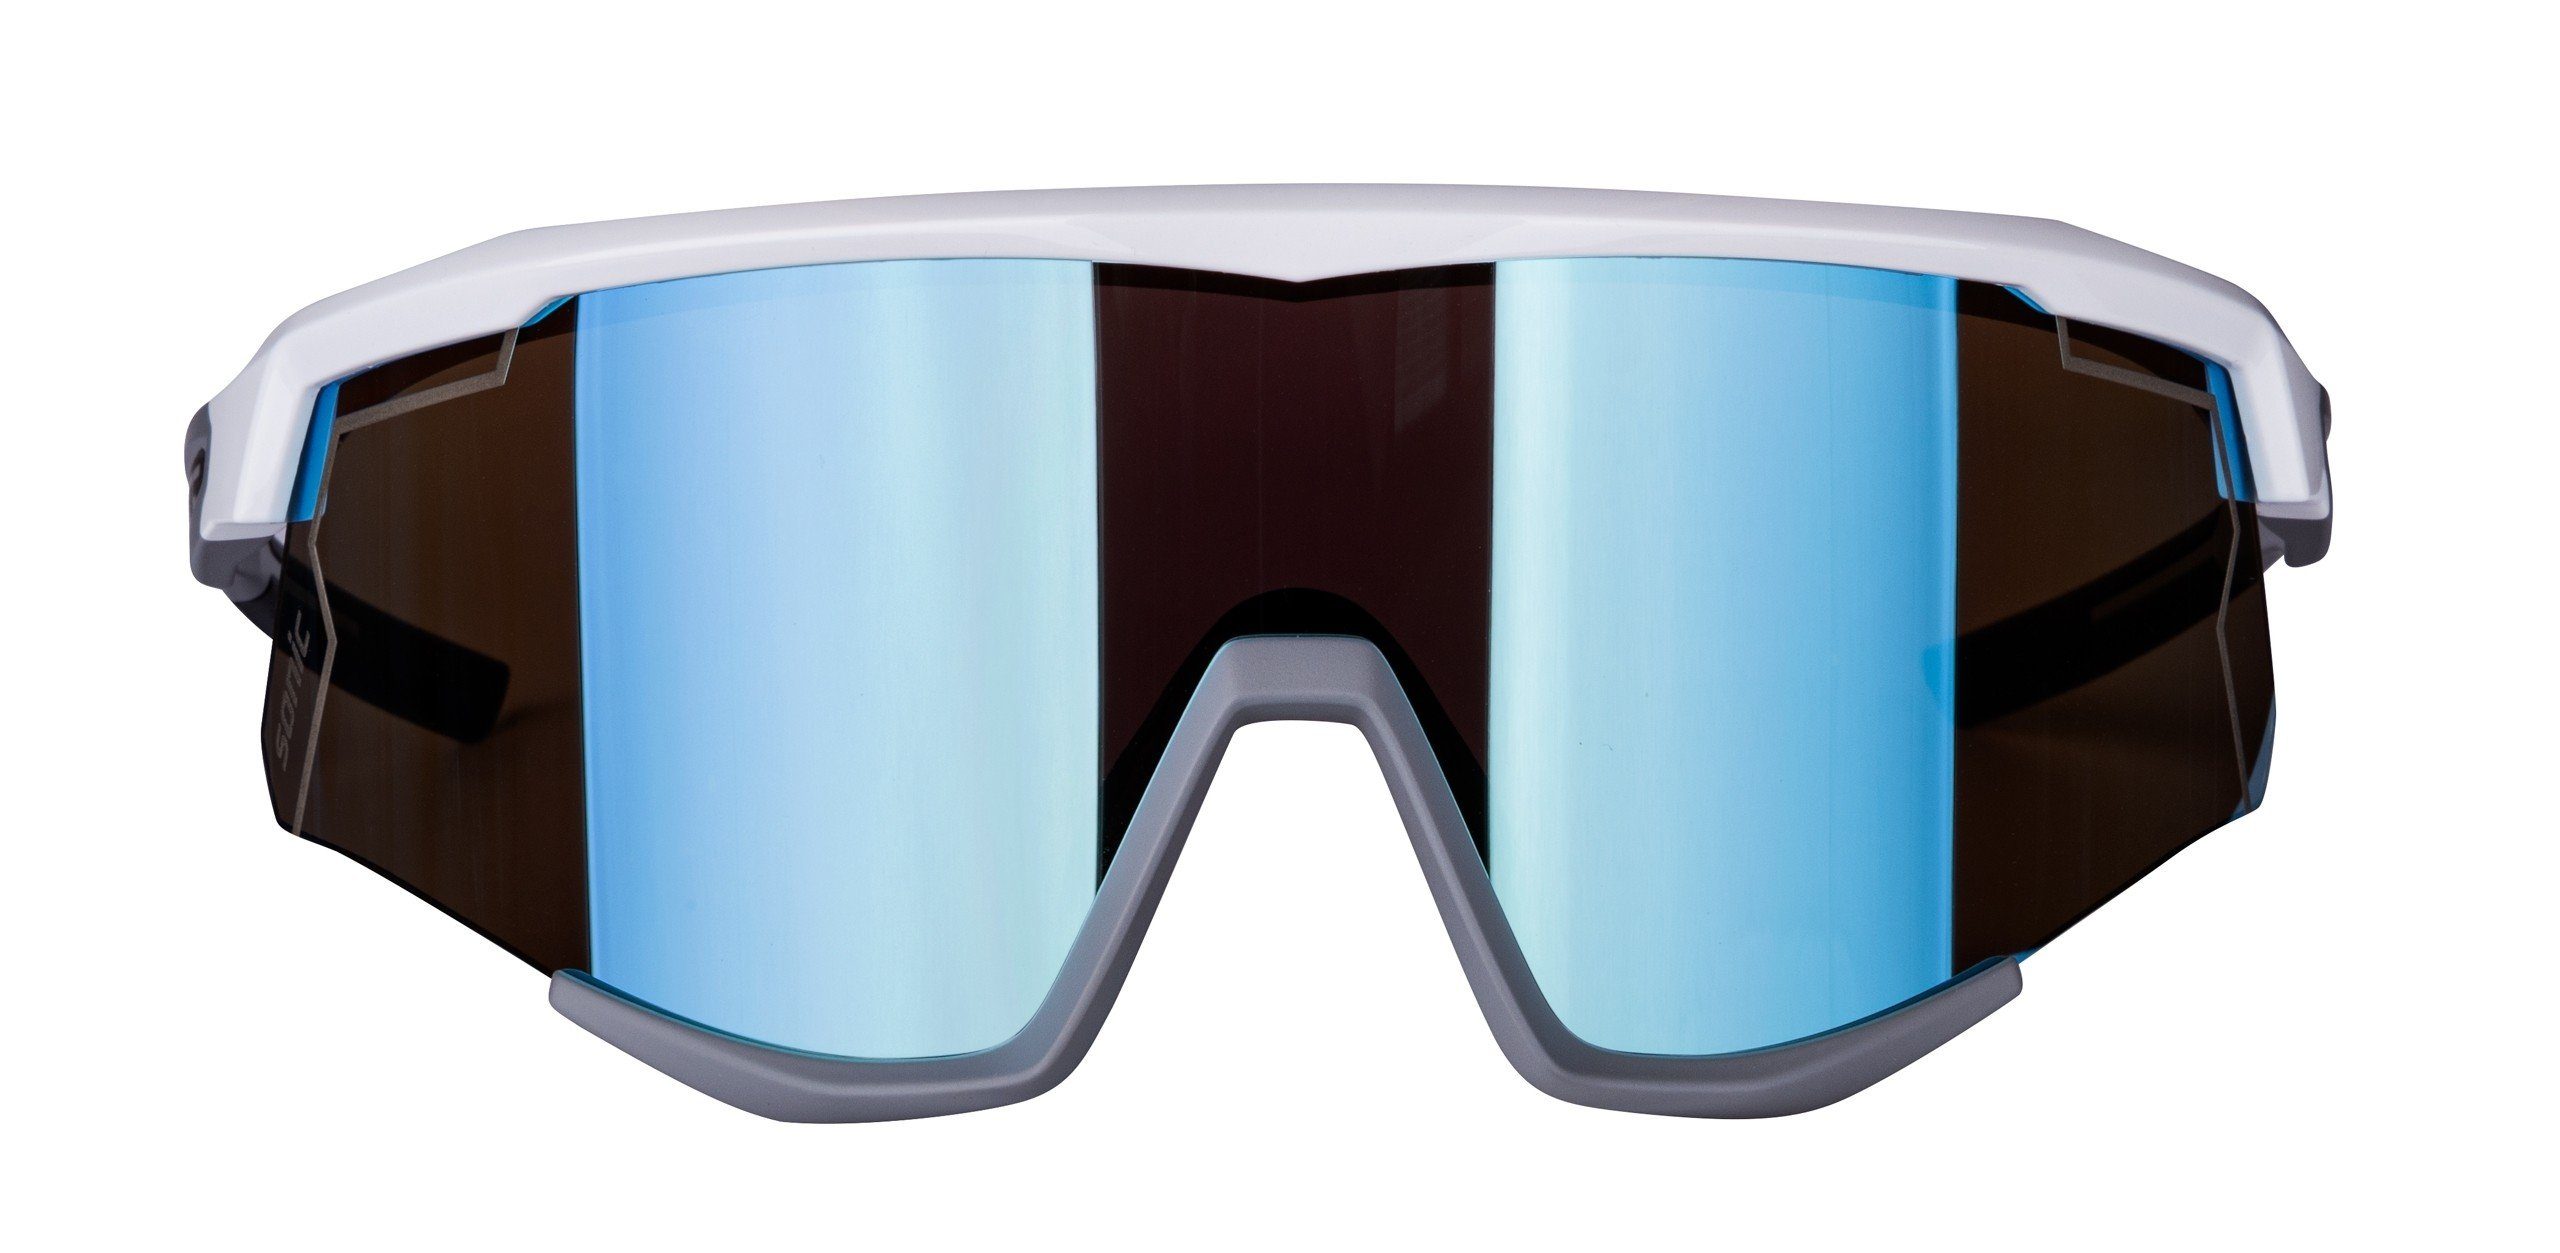 FORCE Fahrradbrille SONIC verspiegelte FORCE Sonnenbrille Scheibe weiß-grau blau